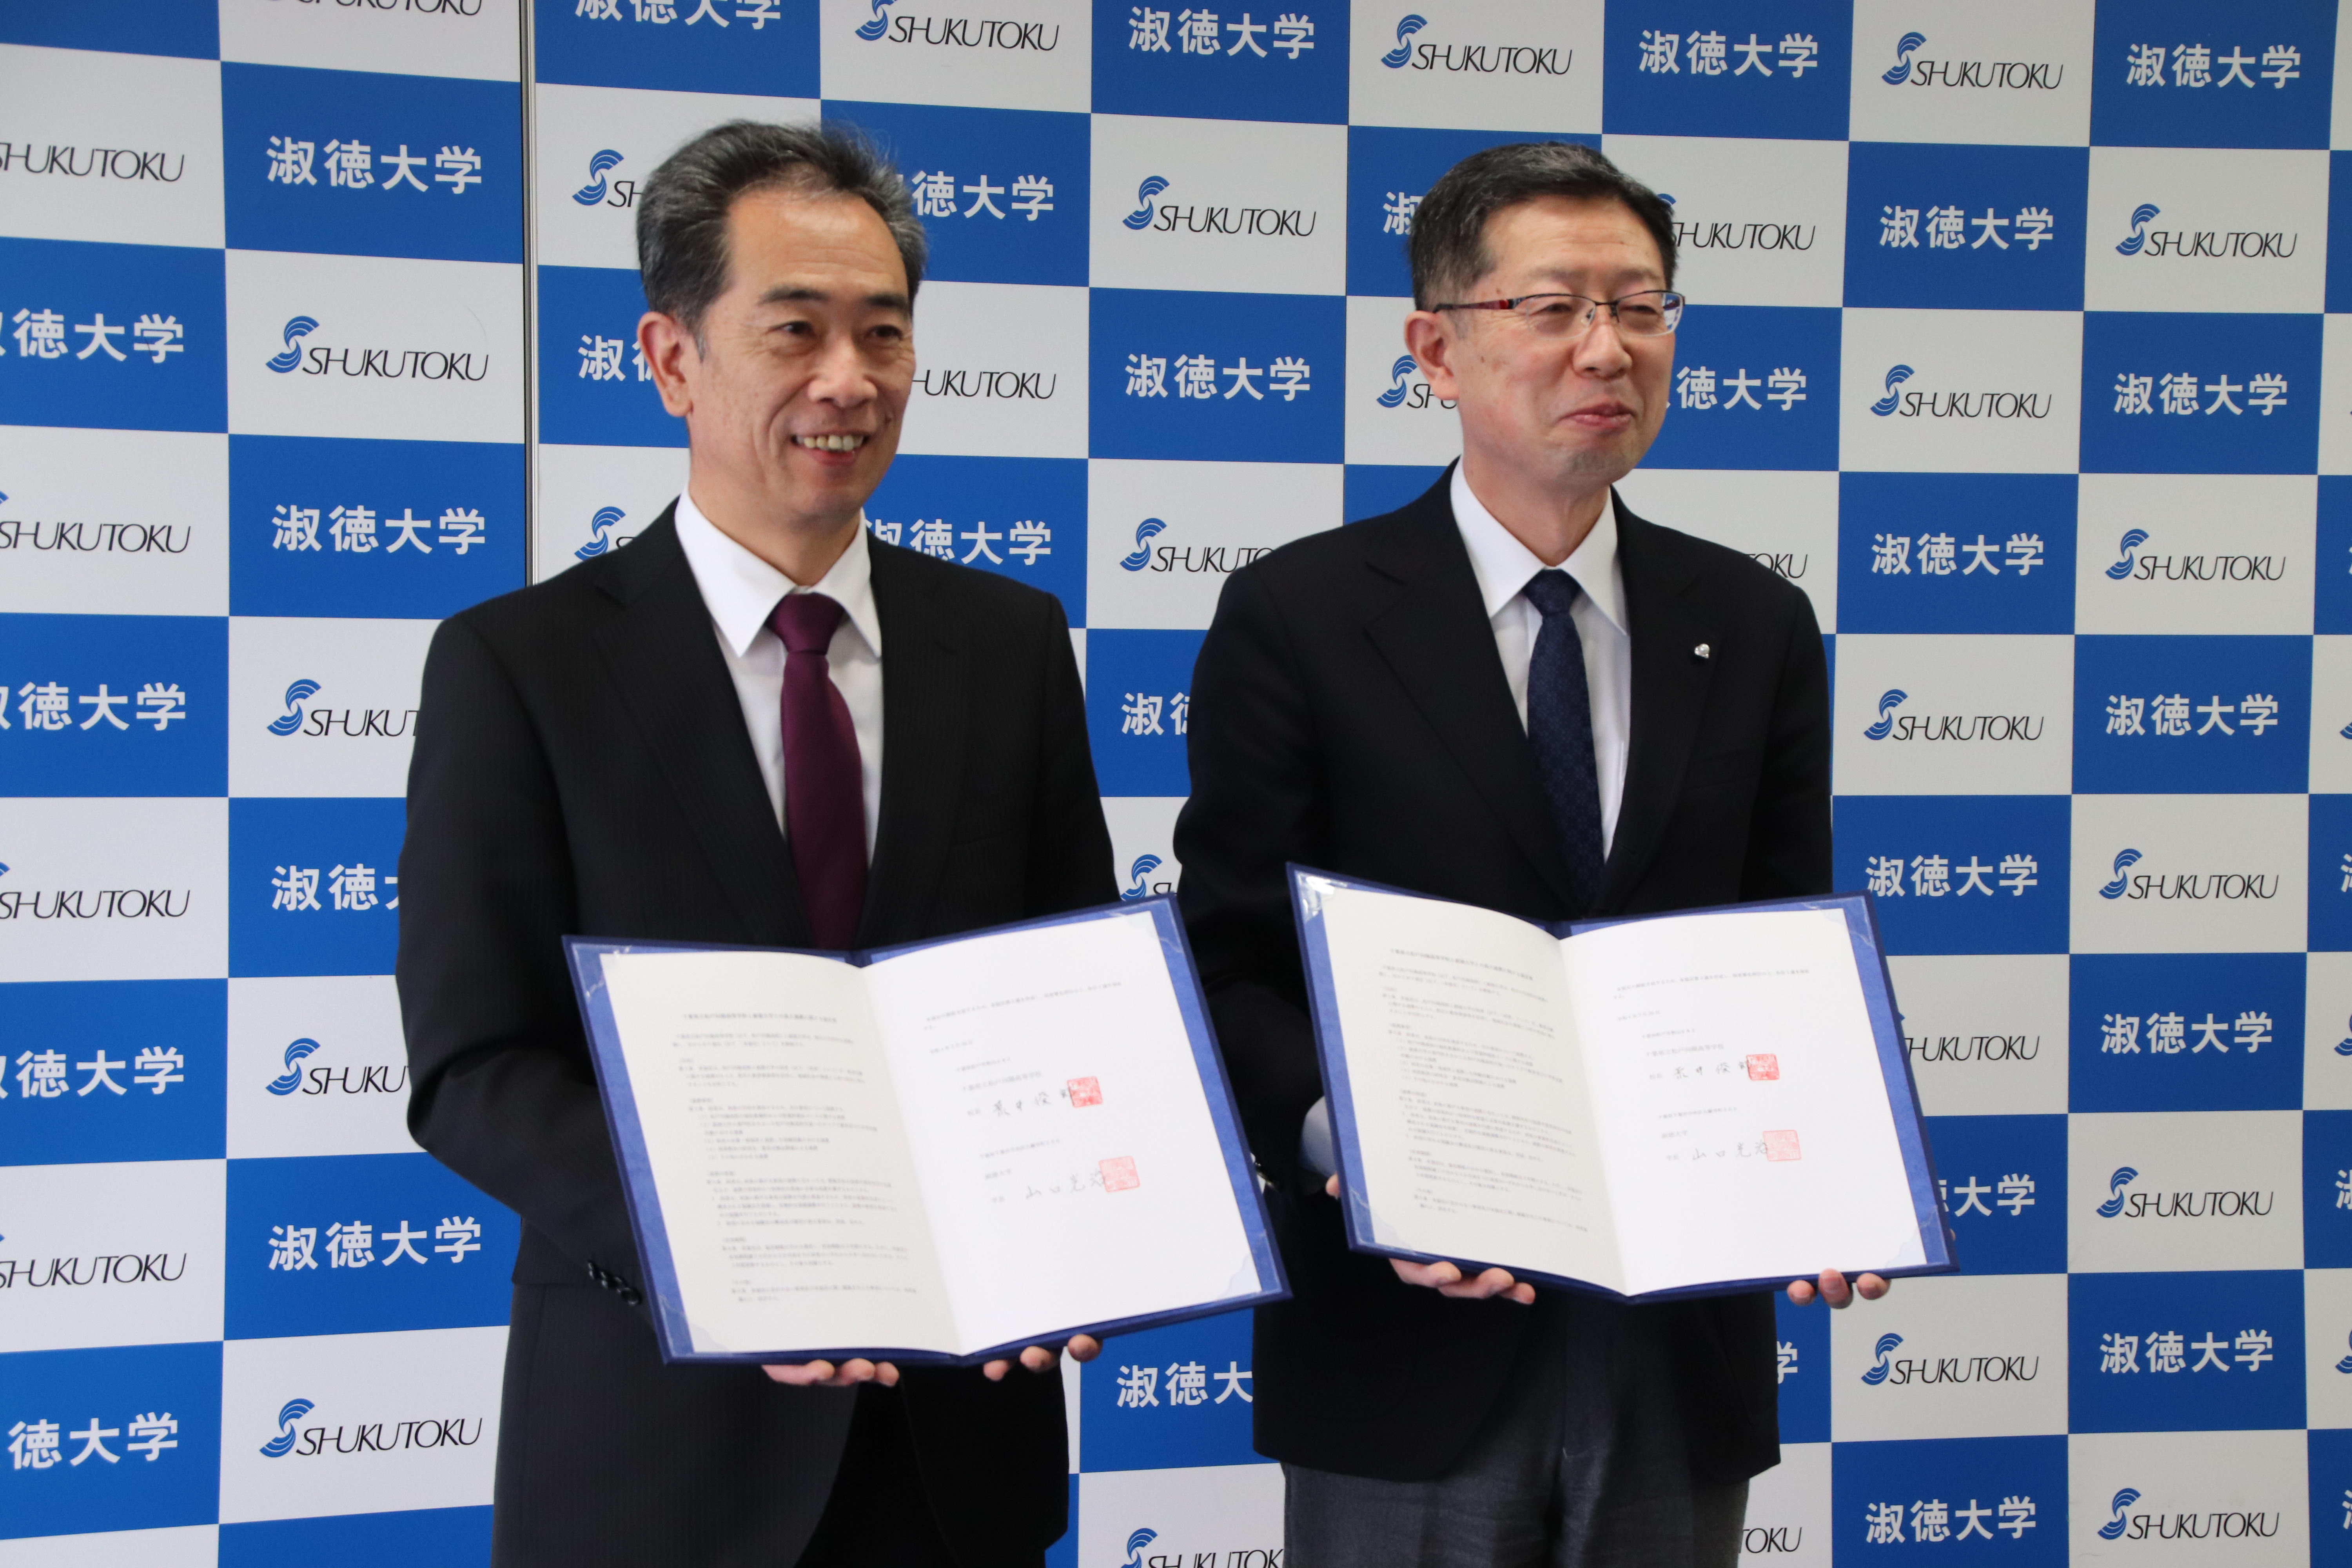 淑徳大学と松戸向陽高等学校が高大連携に関する協定を締結しました